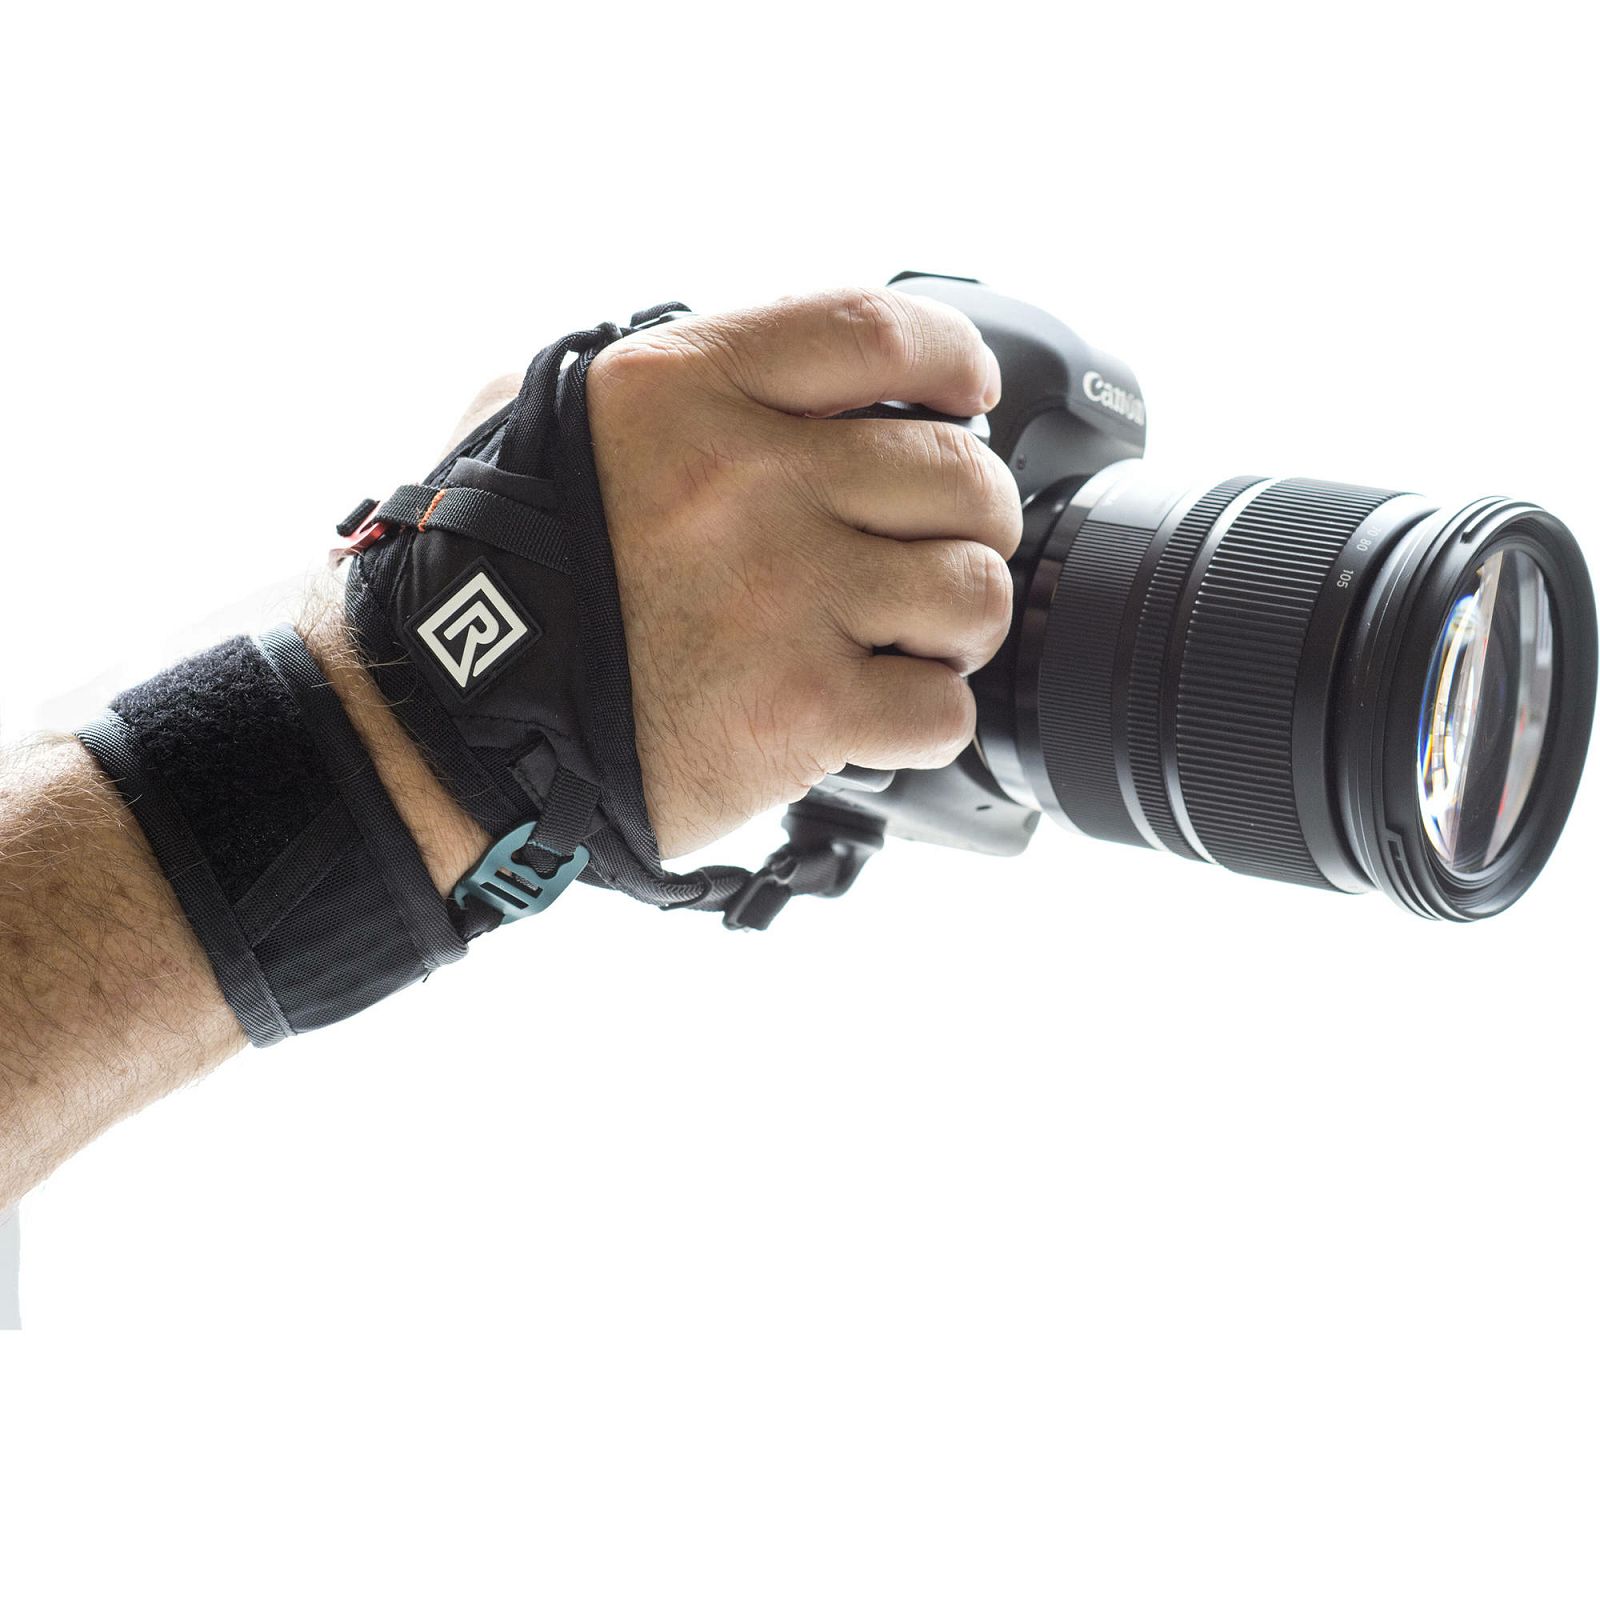 BlackRapid Hand Strap Breathe Camera Grip Strap zahvatnjak ručni držač za fotoaparat (362003)